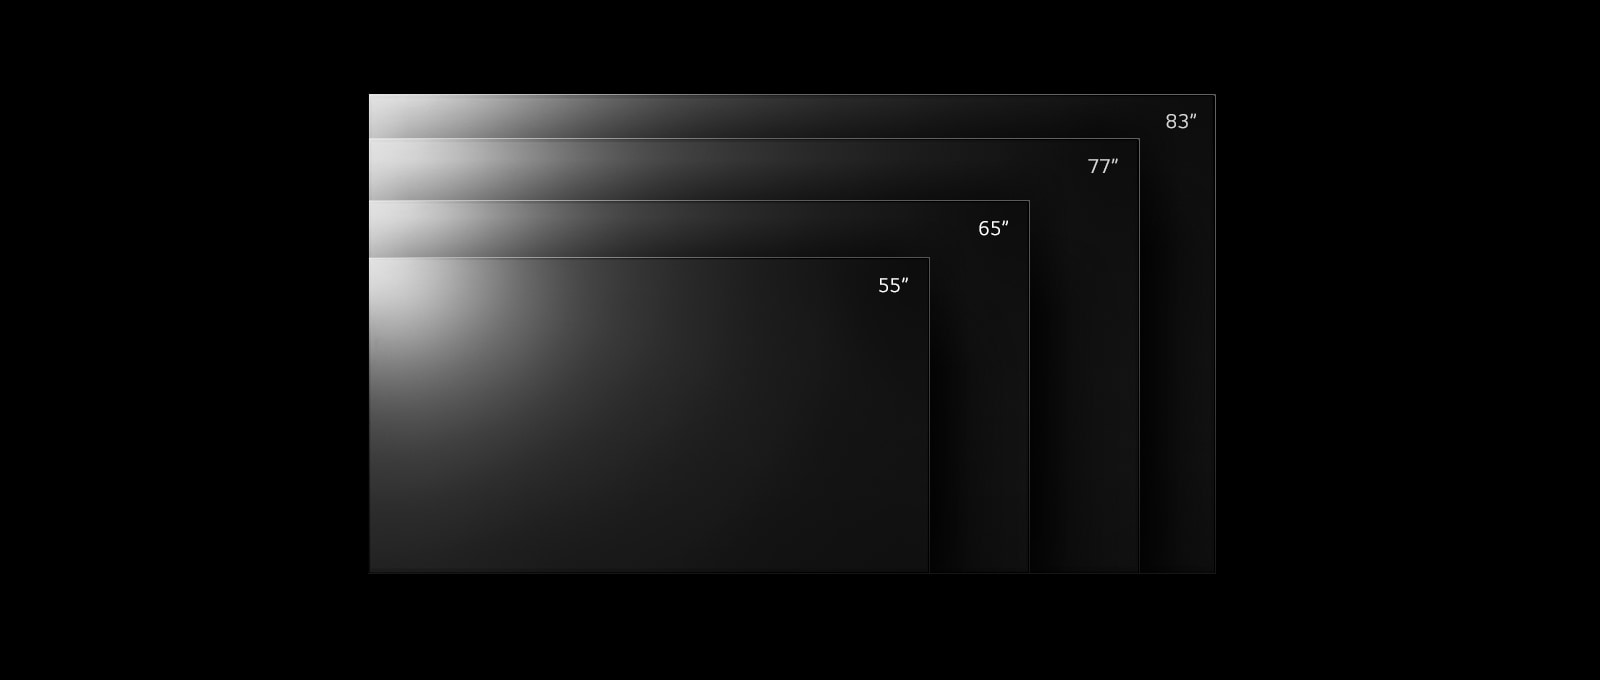 Die Produktpalette der LG OLED evo TV G2-Serie in verschiedenen Größen von 55 Zoll bis 83 Zoll